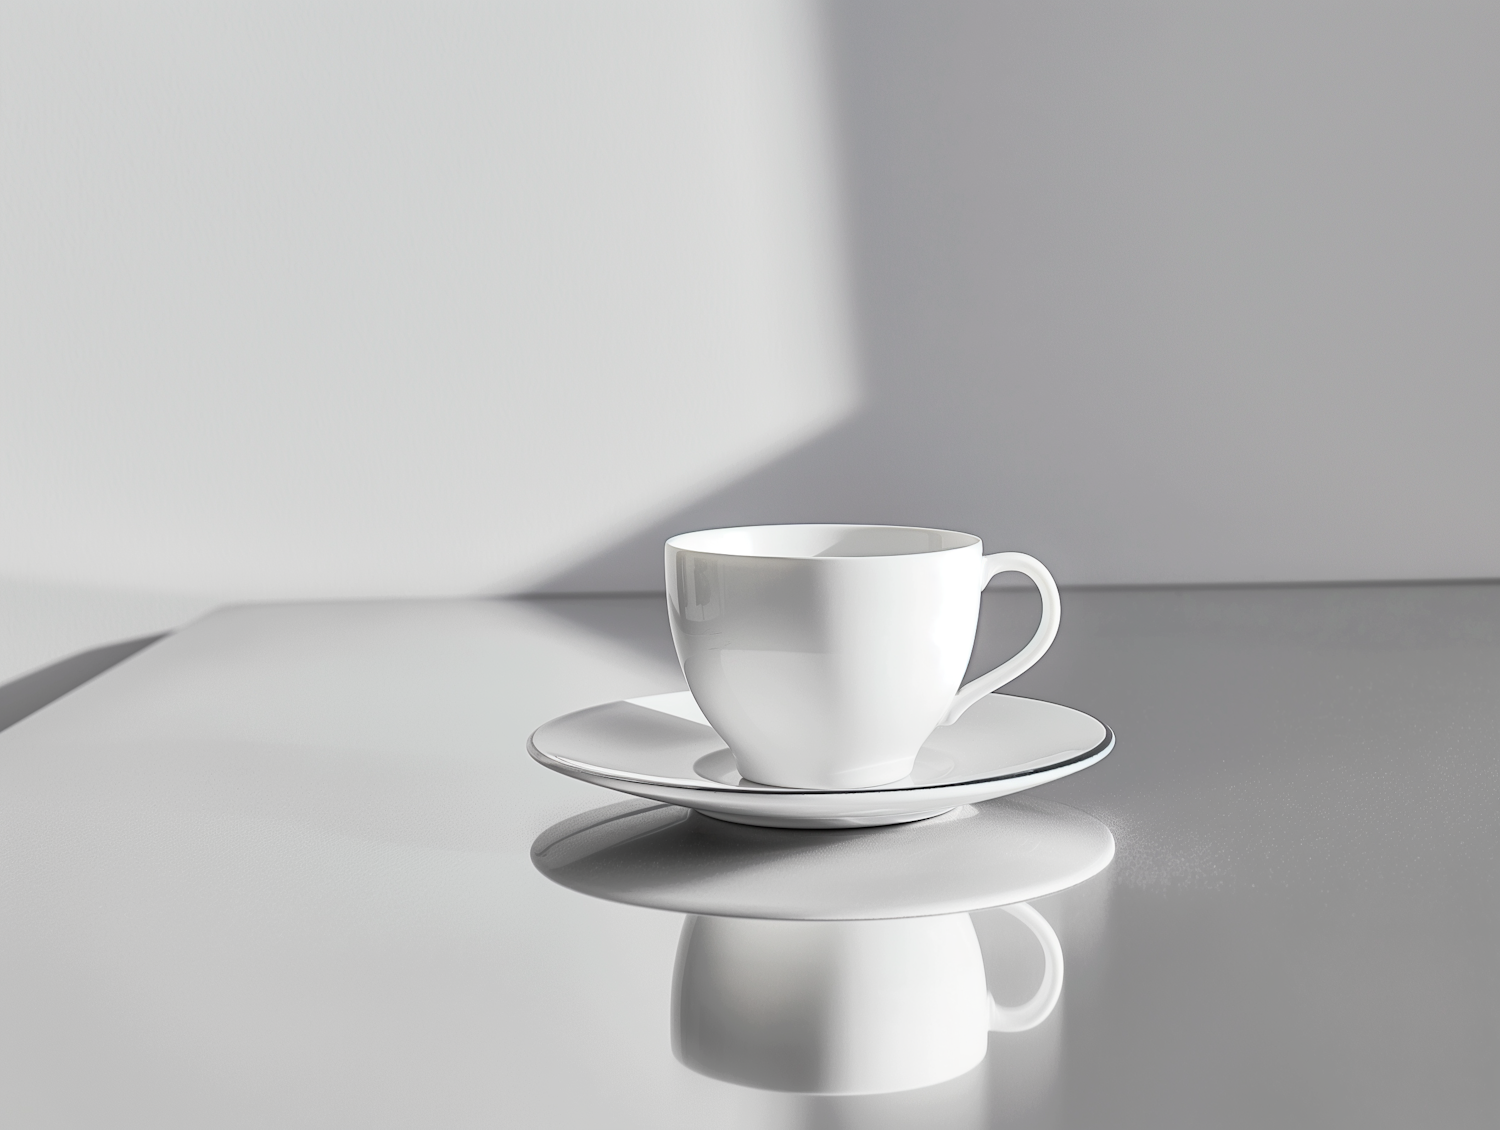 Minimalist Porcelain Teacup Composition